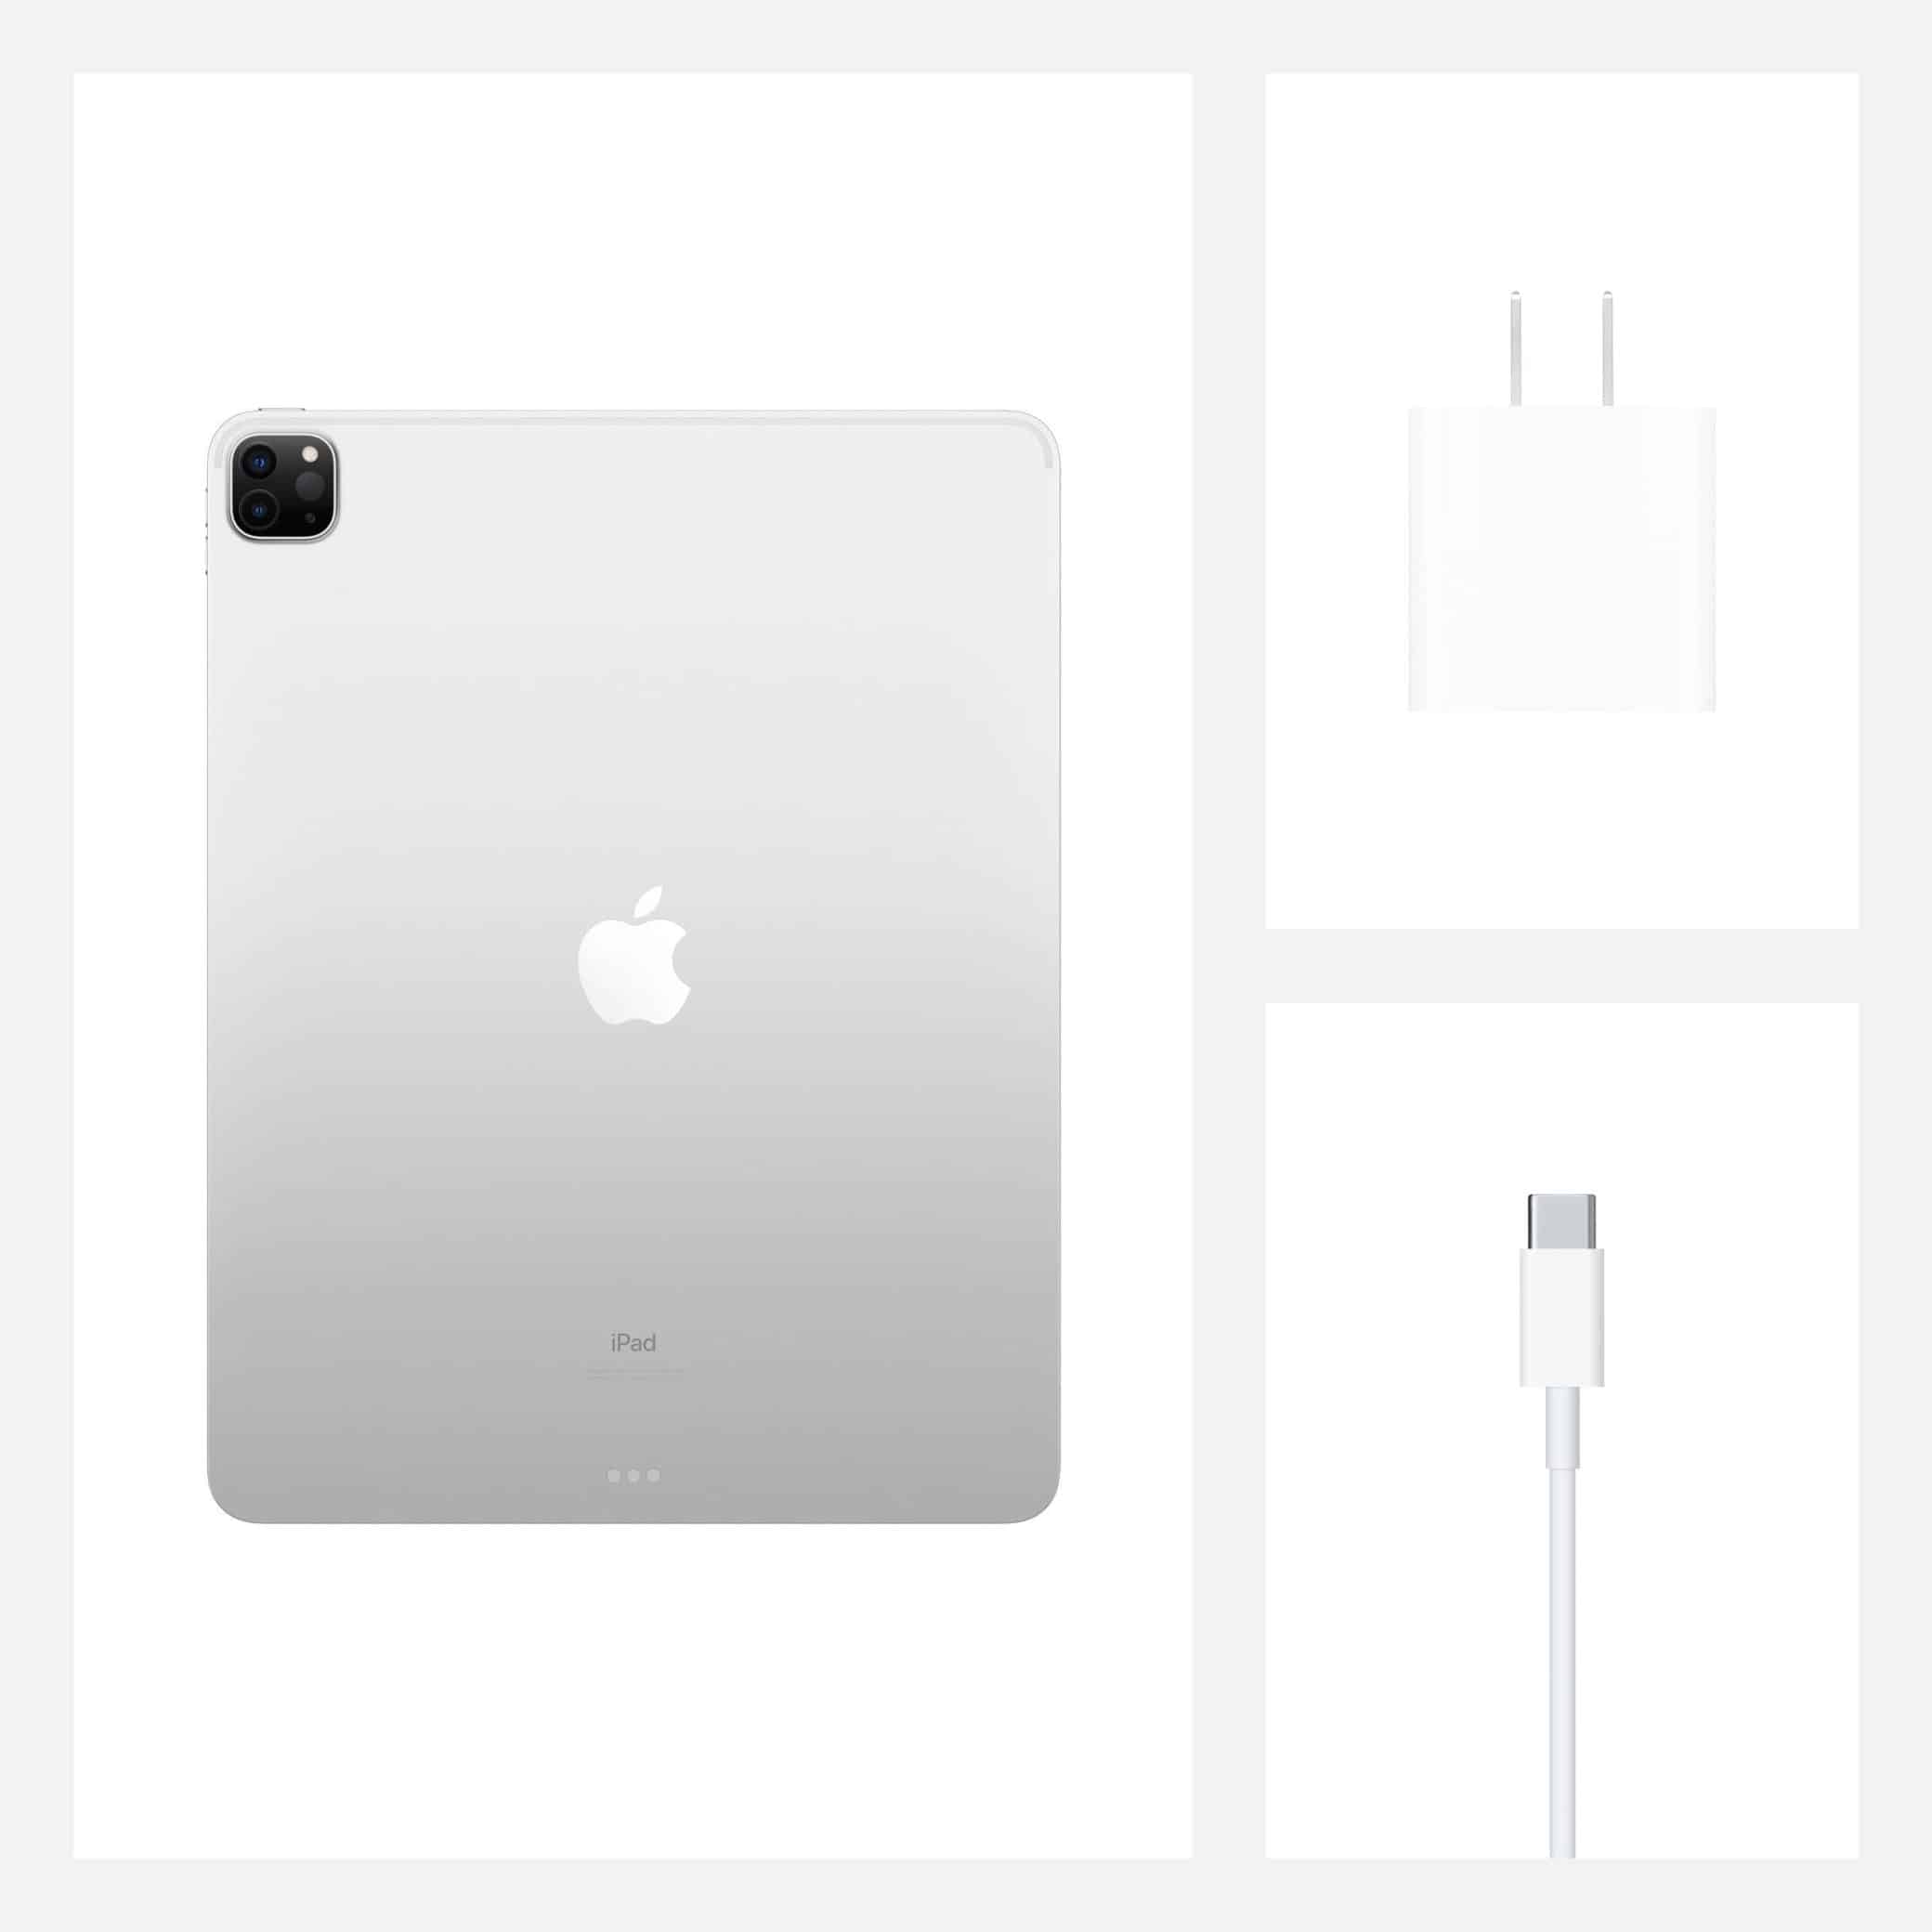 تبلت اپل مدل iPad Pro 12.9 inch 2020 WiFi ظرفیت 512 گیگابایت